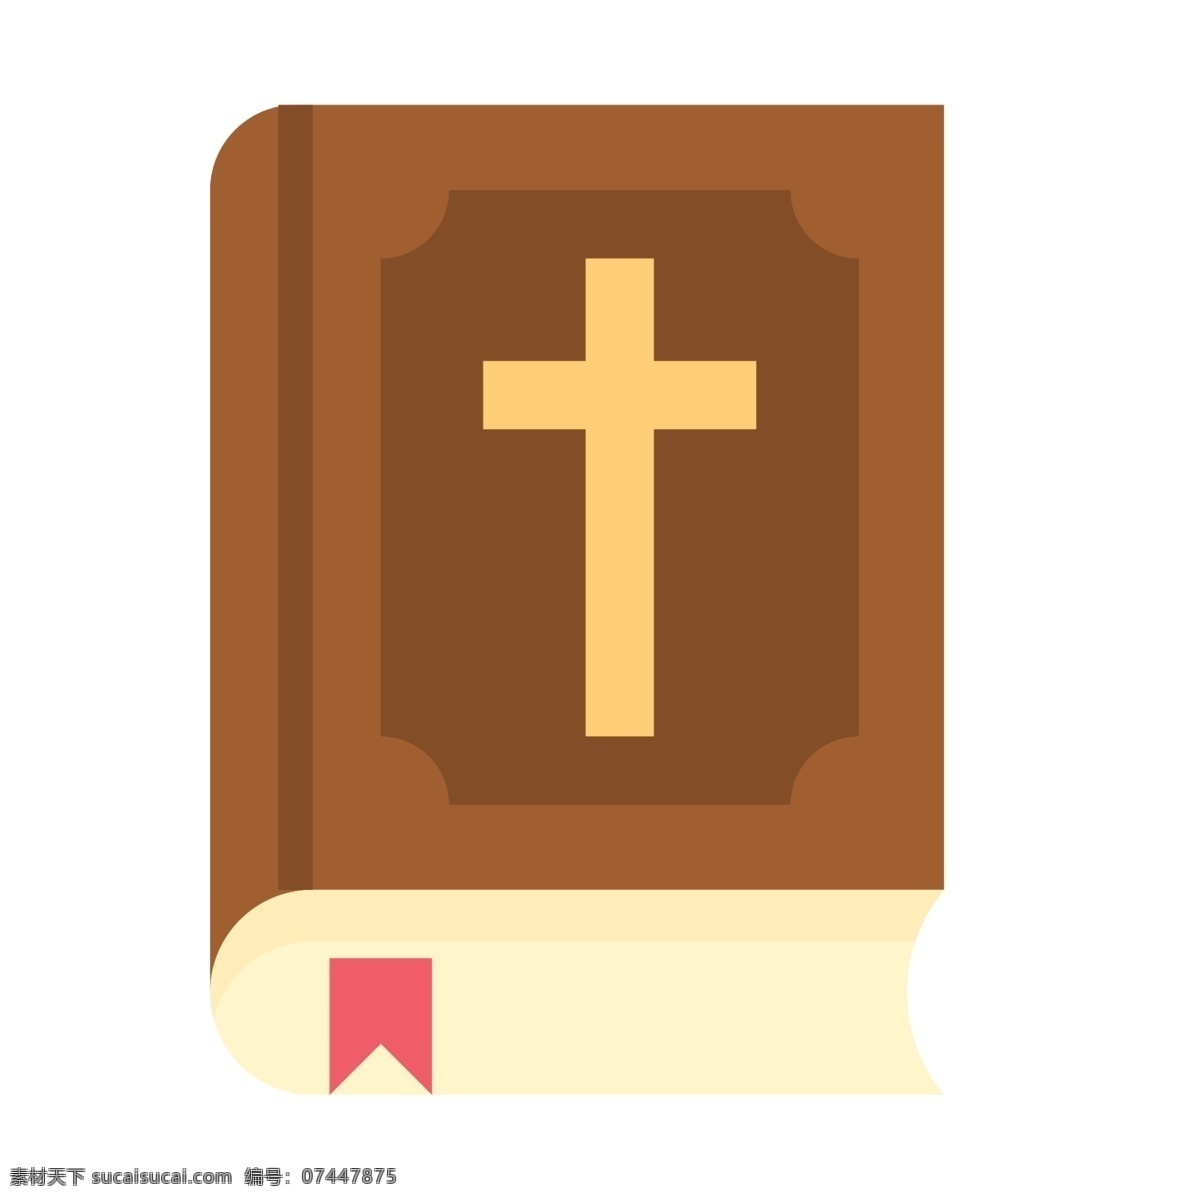 一本 卡通 动漫 圣经 免 抠 图 书 结婚圣经书 卡通圣经 基督教徒